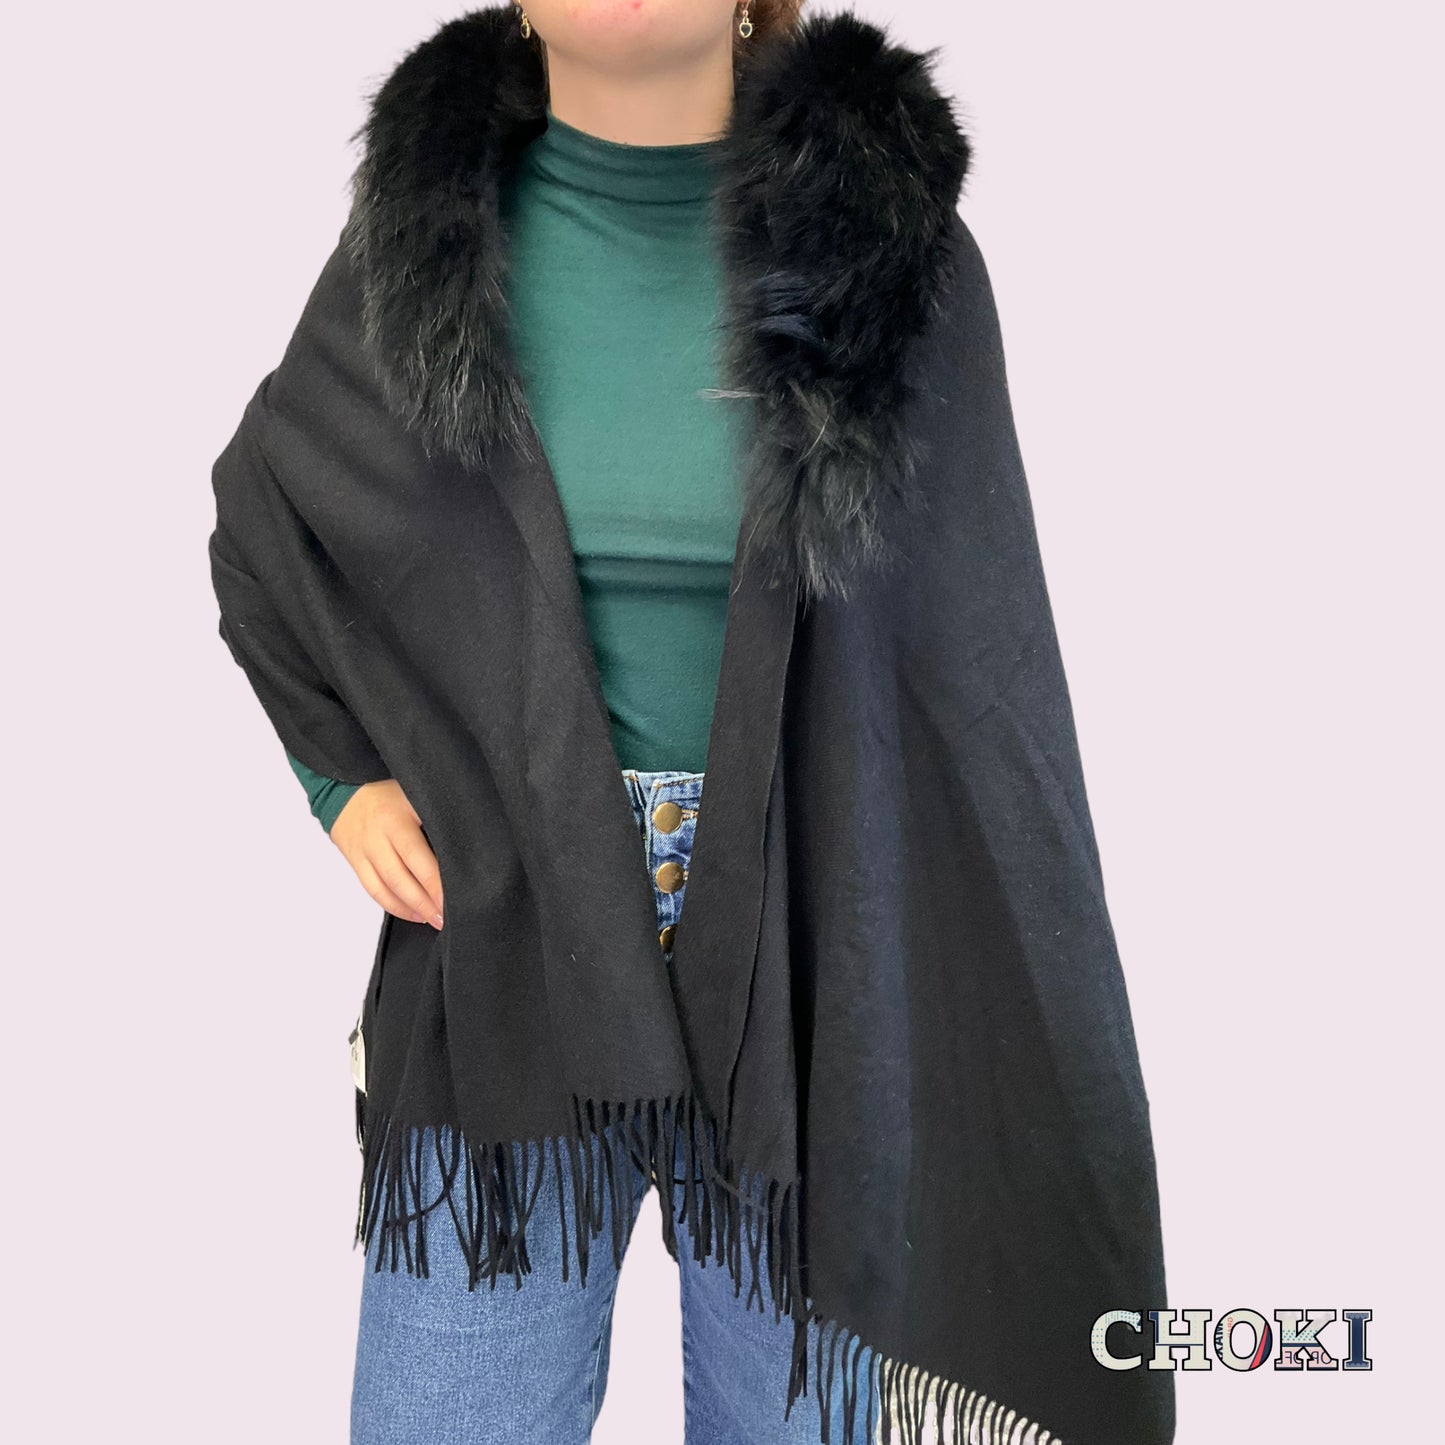 Cachemere - Wool Fur scarves